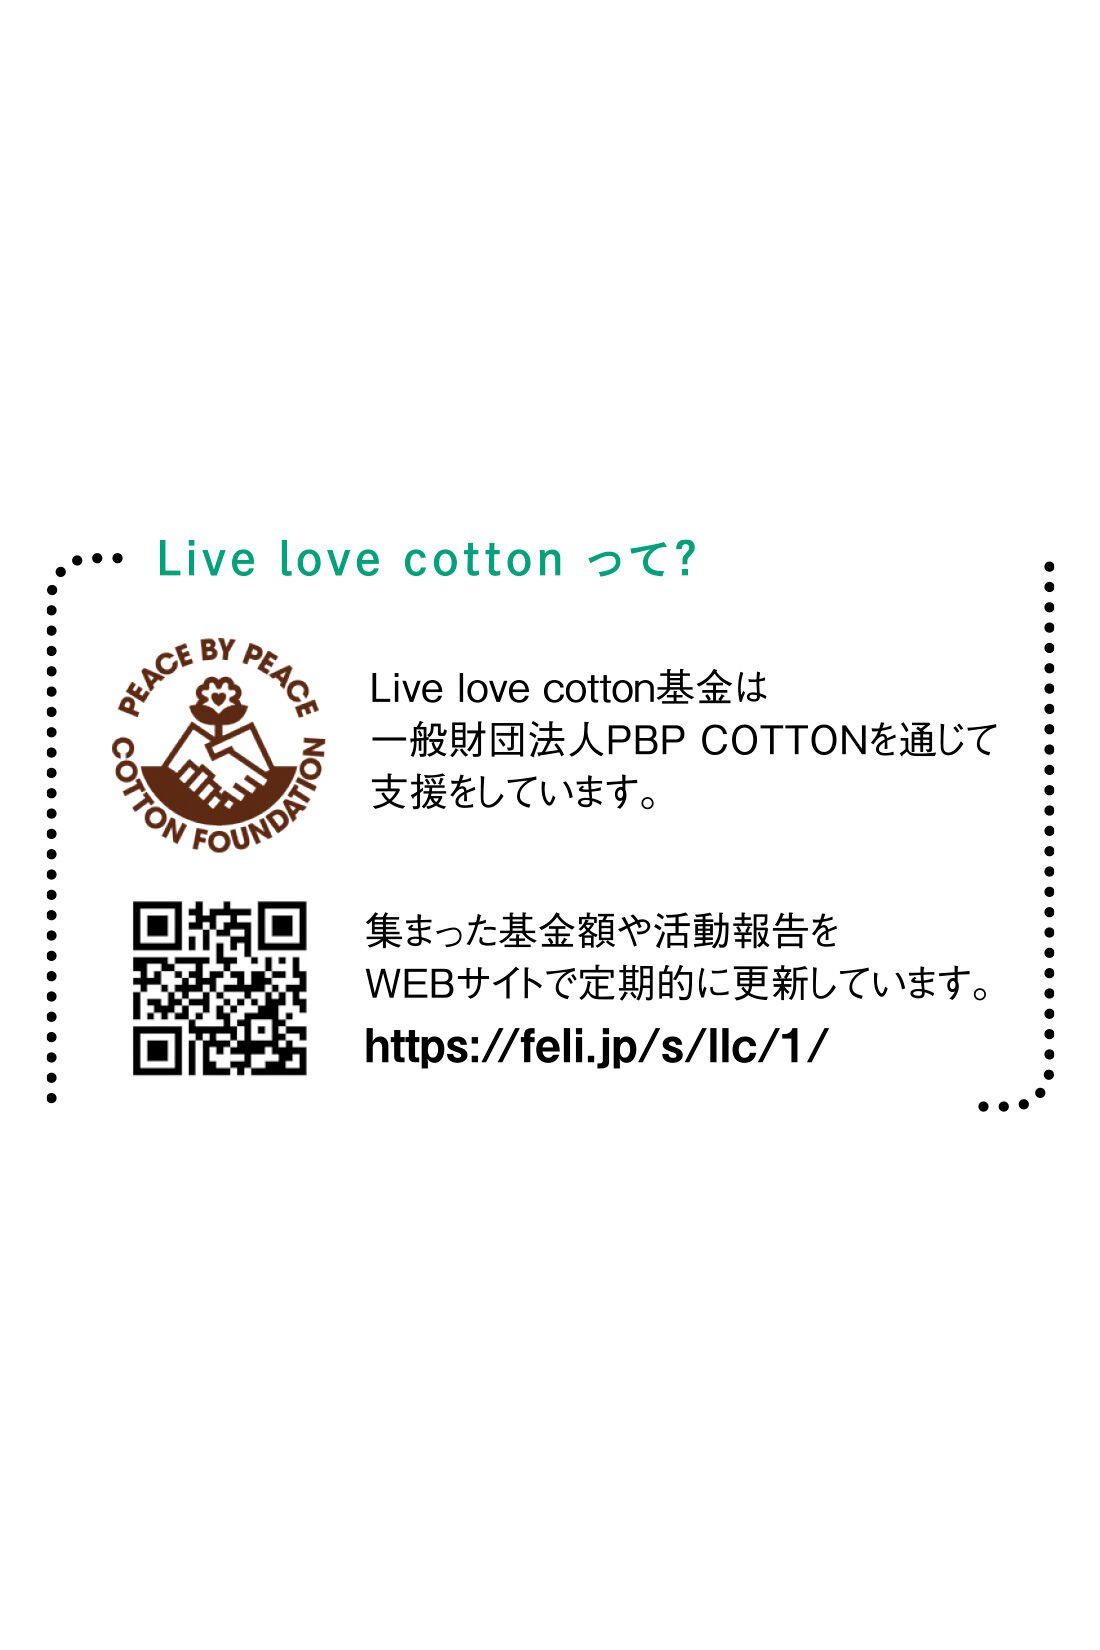 Live in  comfort|Live love cotton（R）プロジェクト リブ イン コンフォート 一枚でサマになる袖布はく ボーダートップスの会